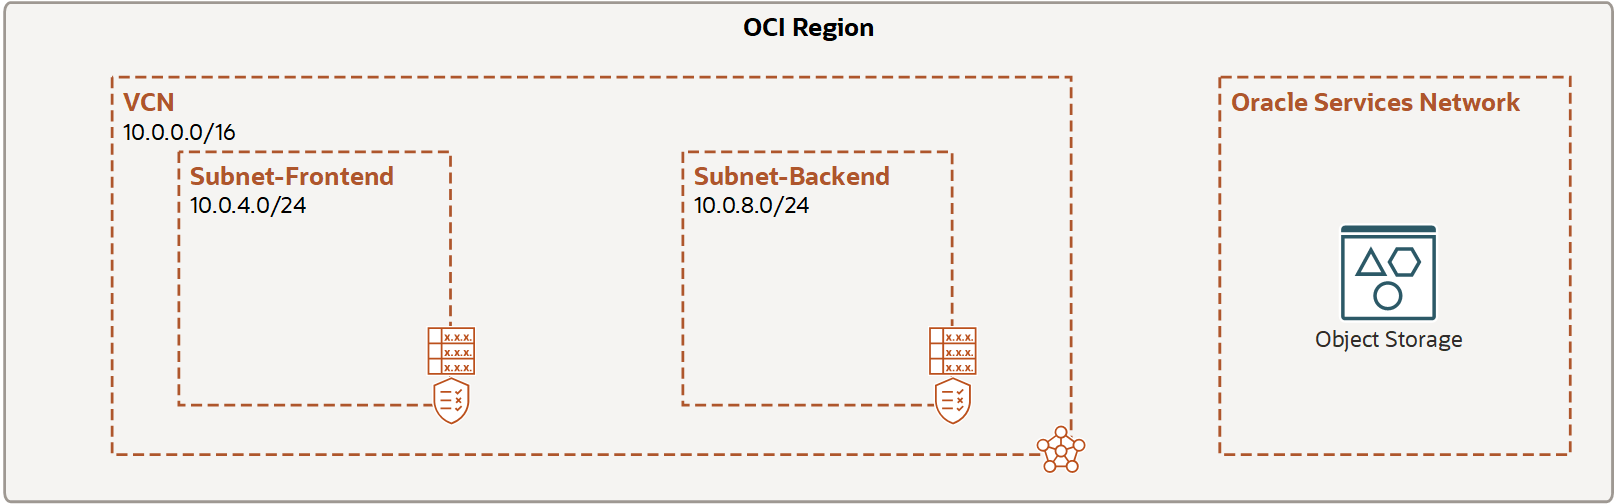 En esta imagen se muestra la tarea 1: configurar la VCN.